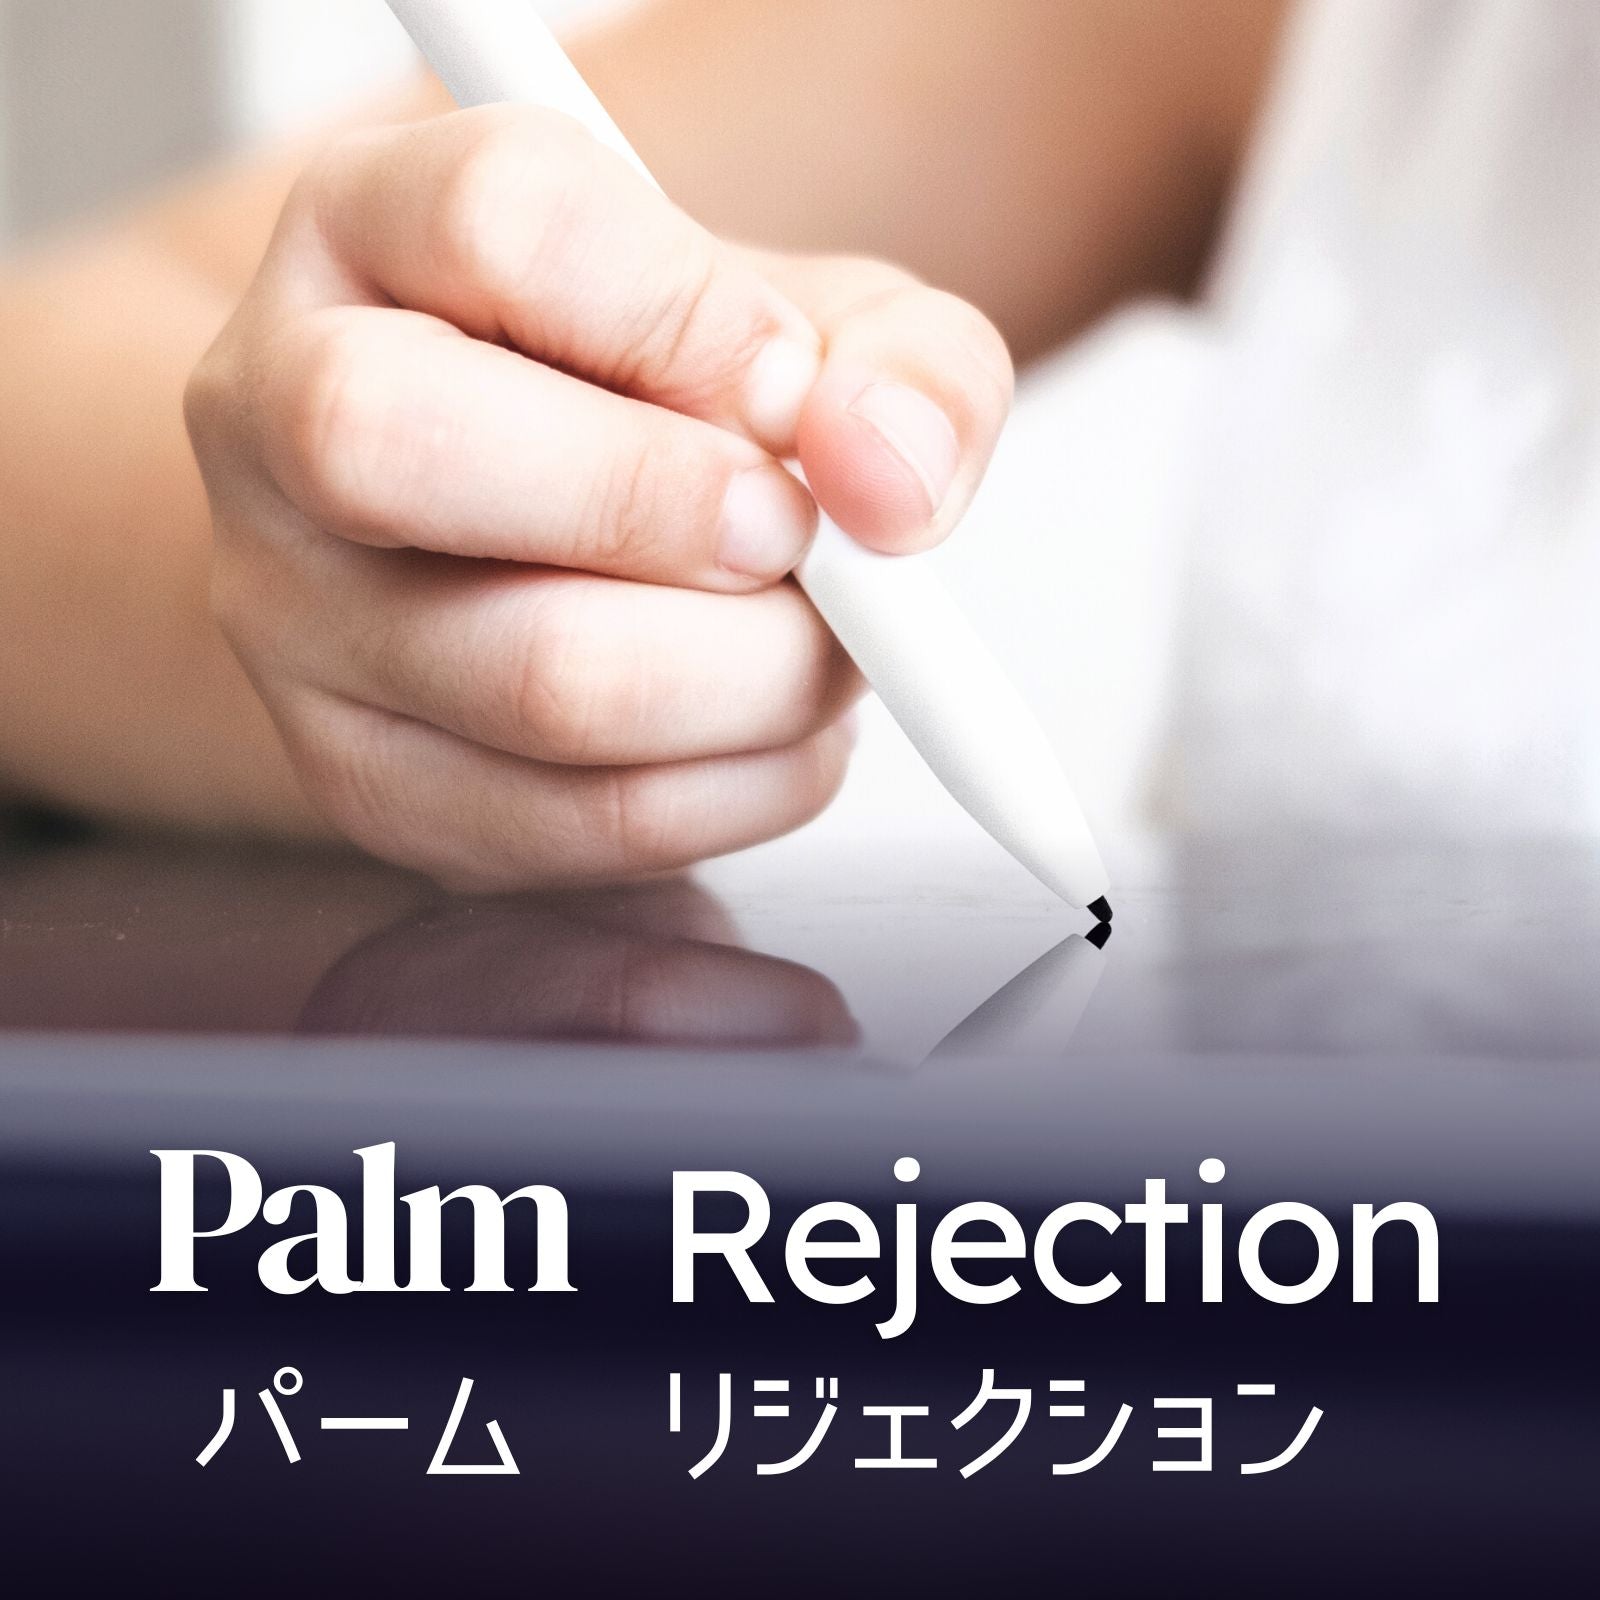 palm_rejection_w